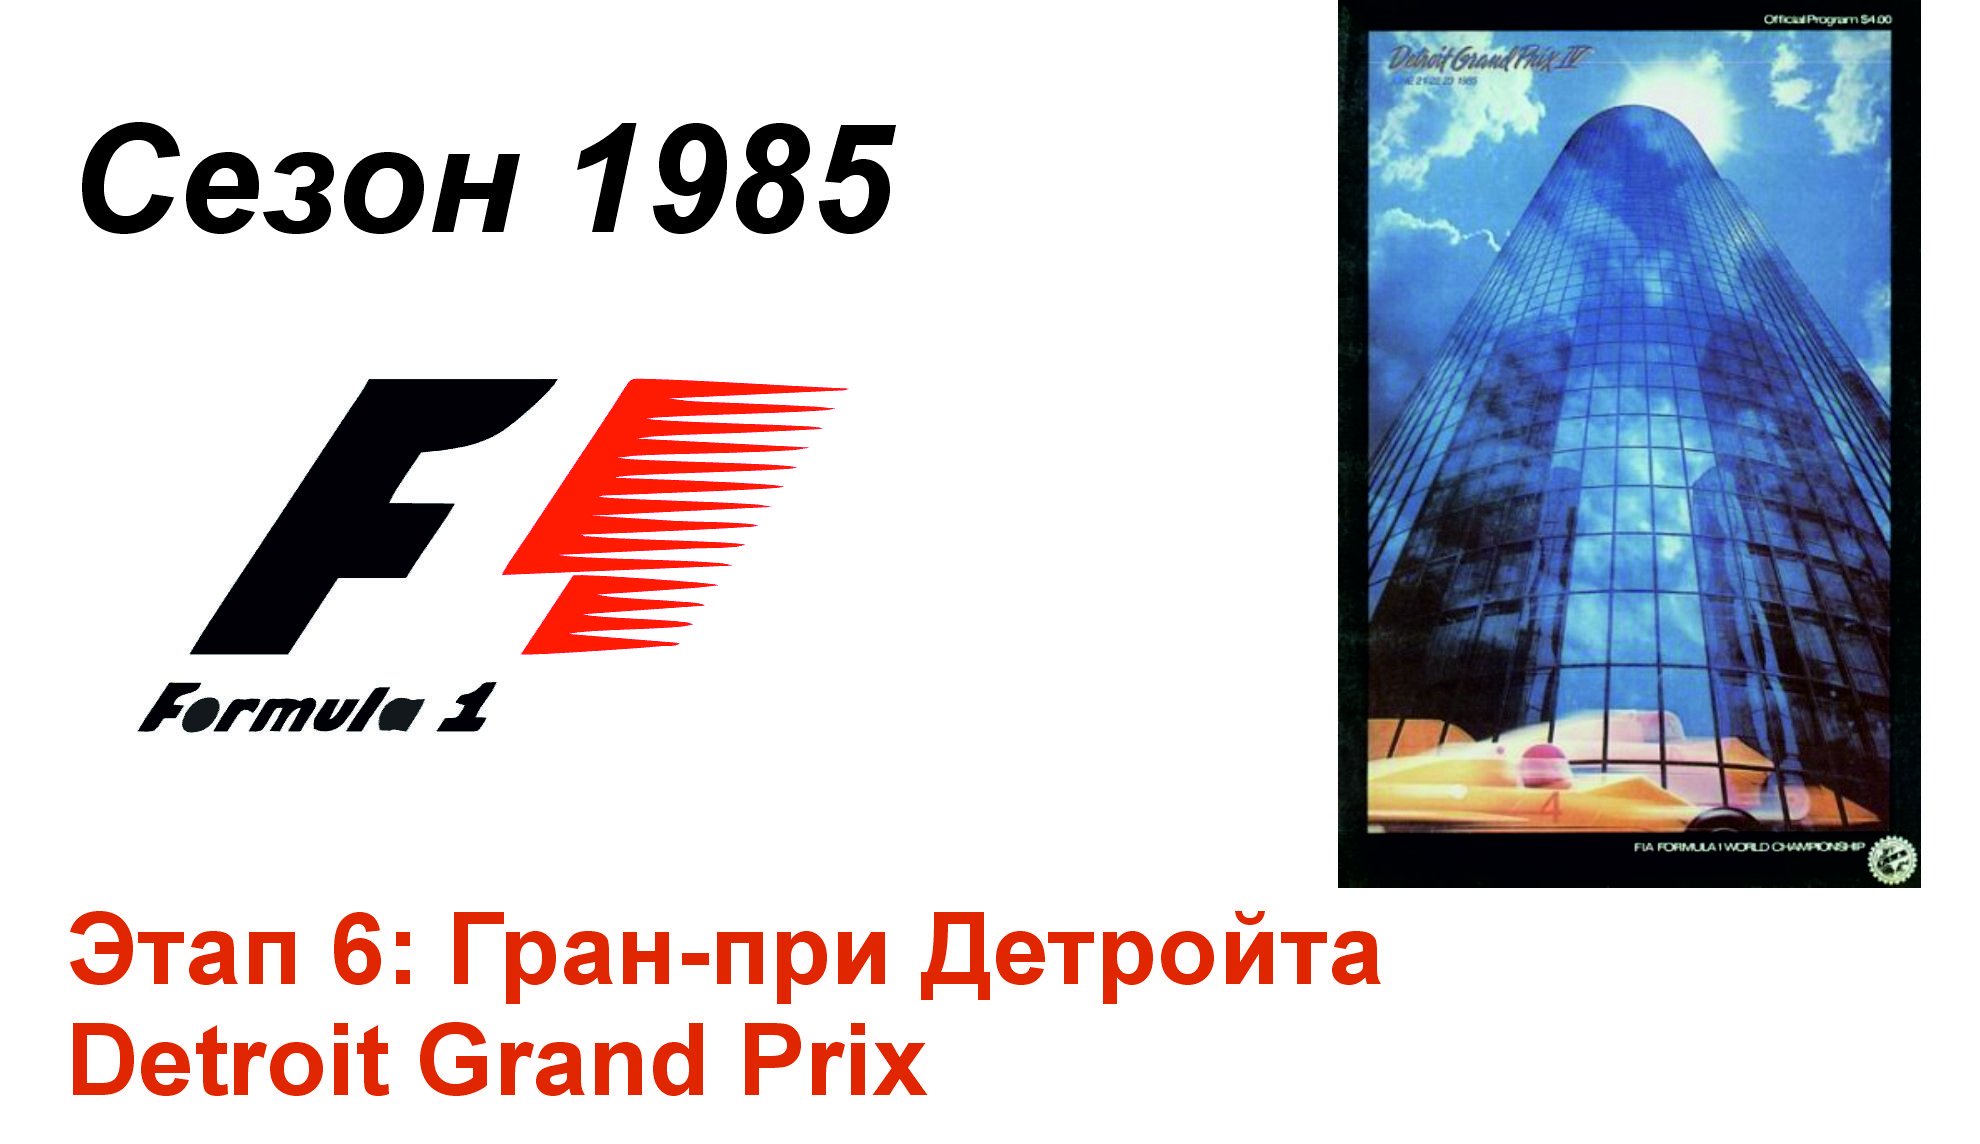 Формула-1 / Formula-1 (1985). Этап 6: Гран-при Детройта (Англ/Eng)